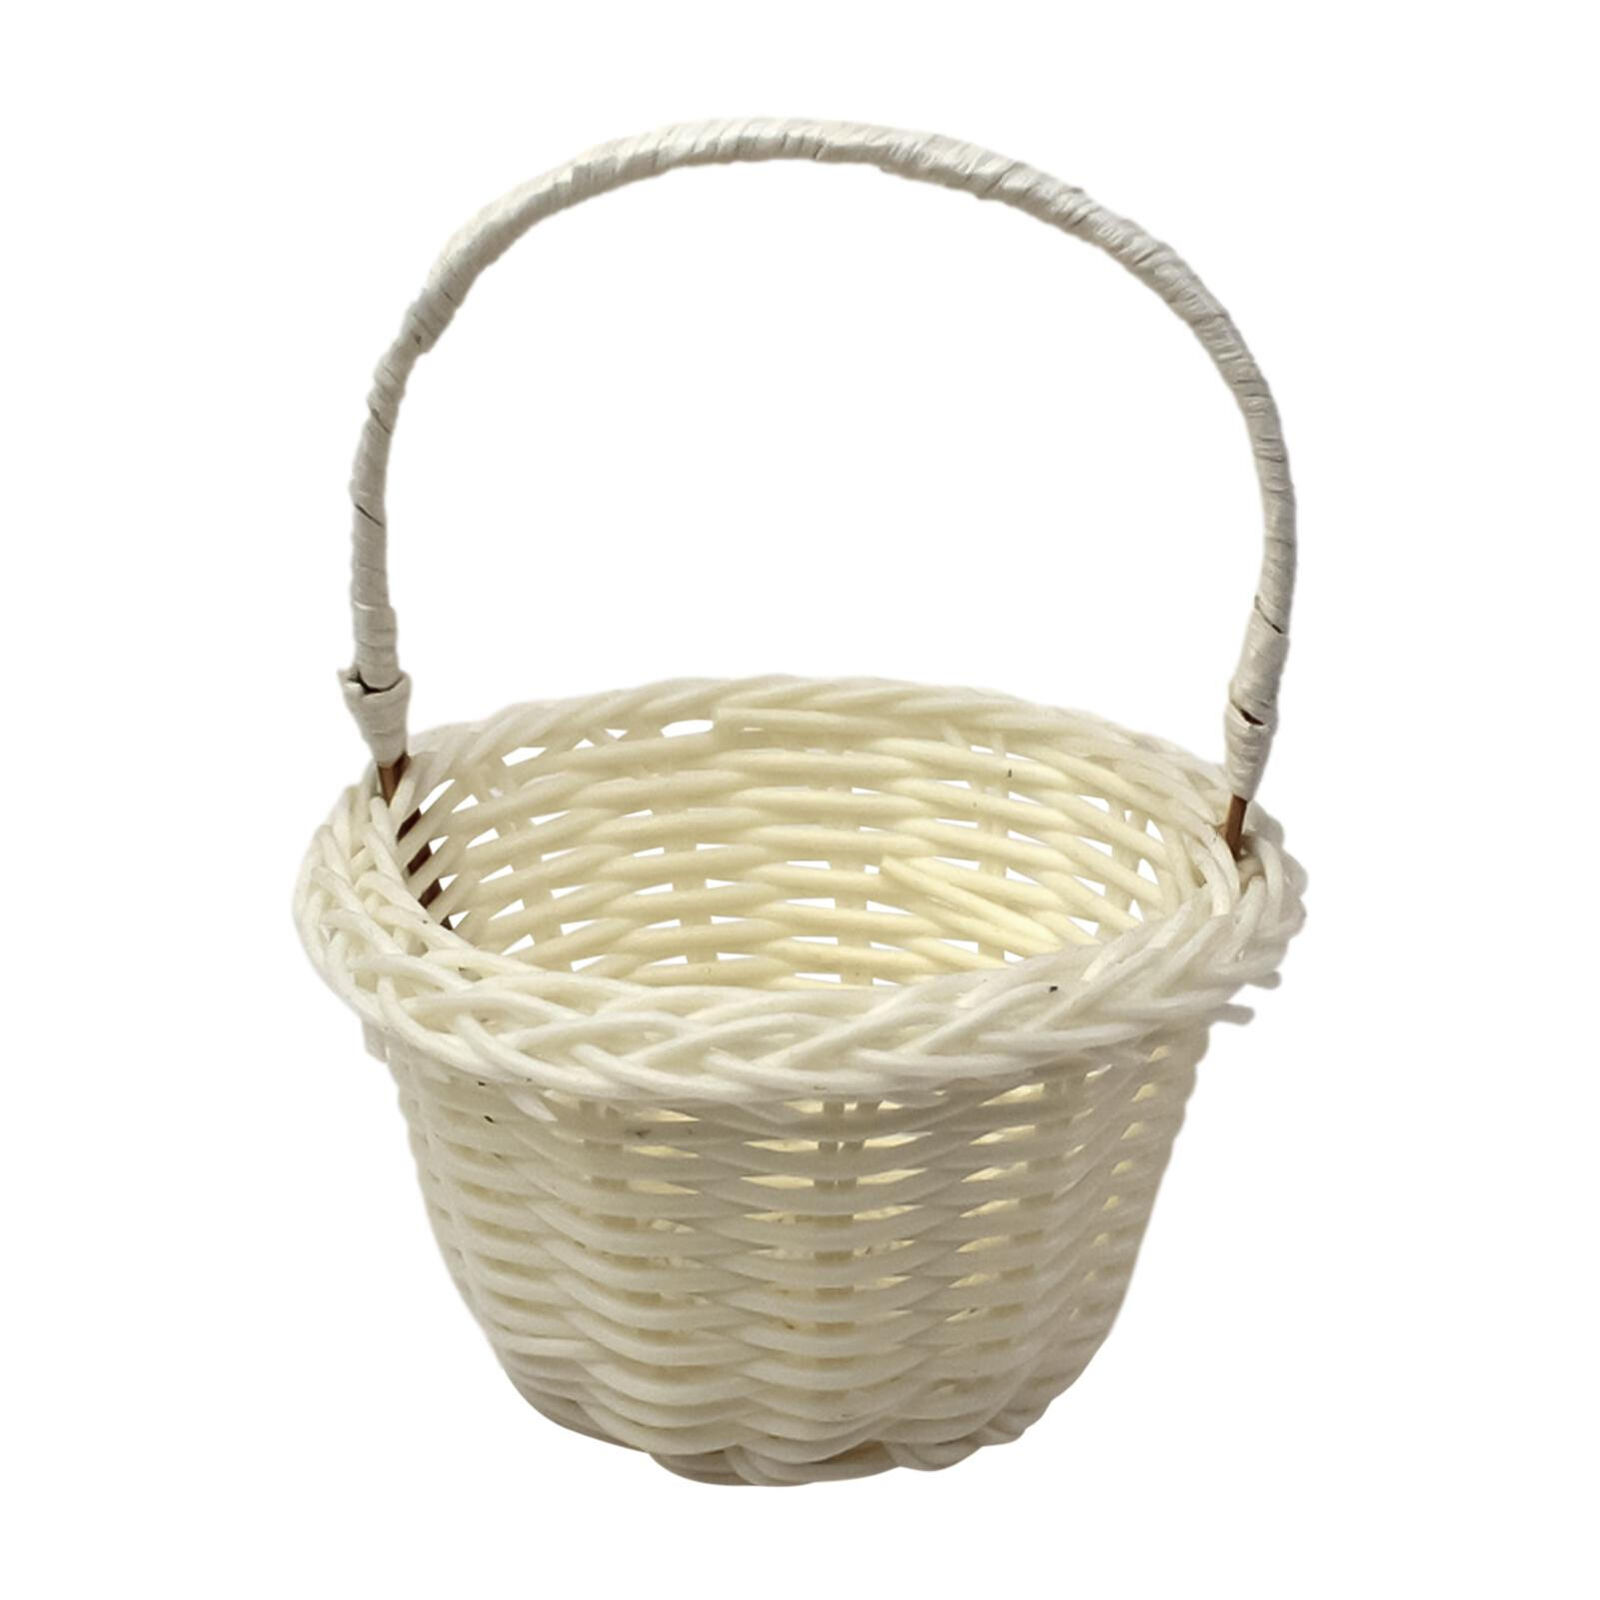 Small Wood Woven Basket Wicker 5*3